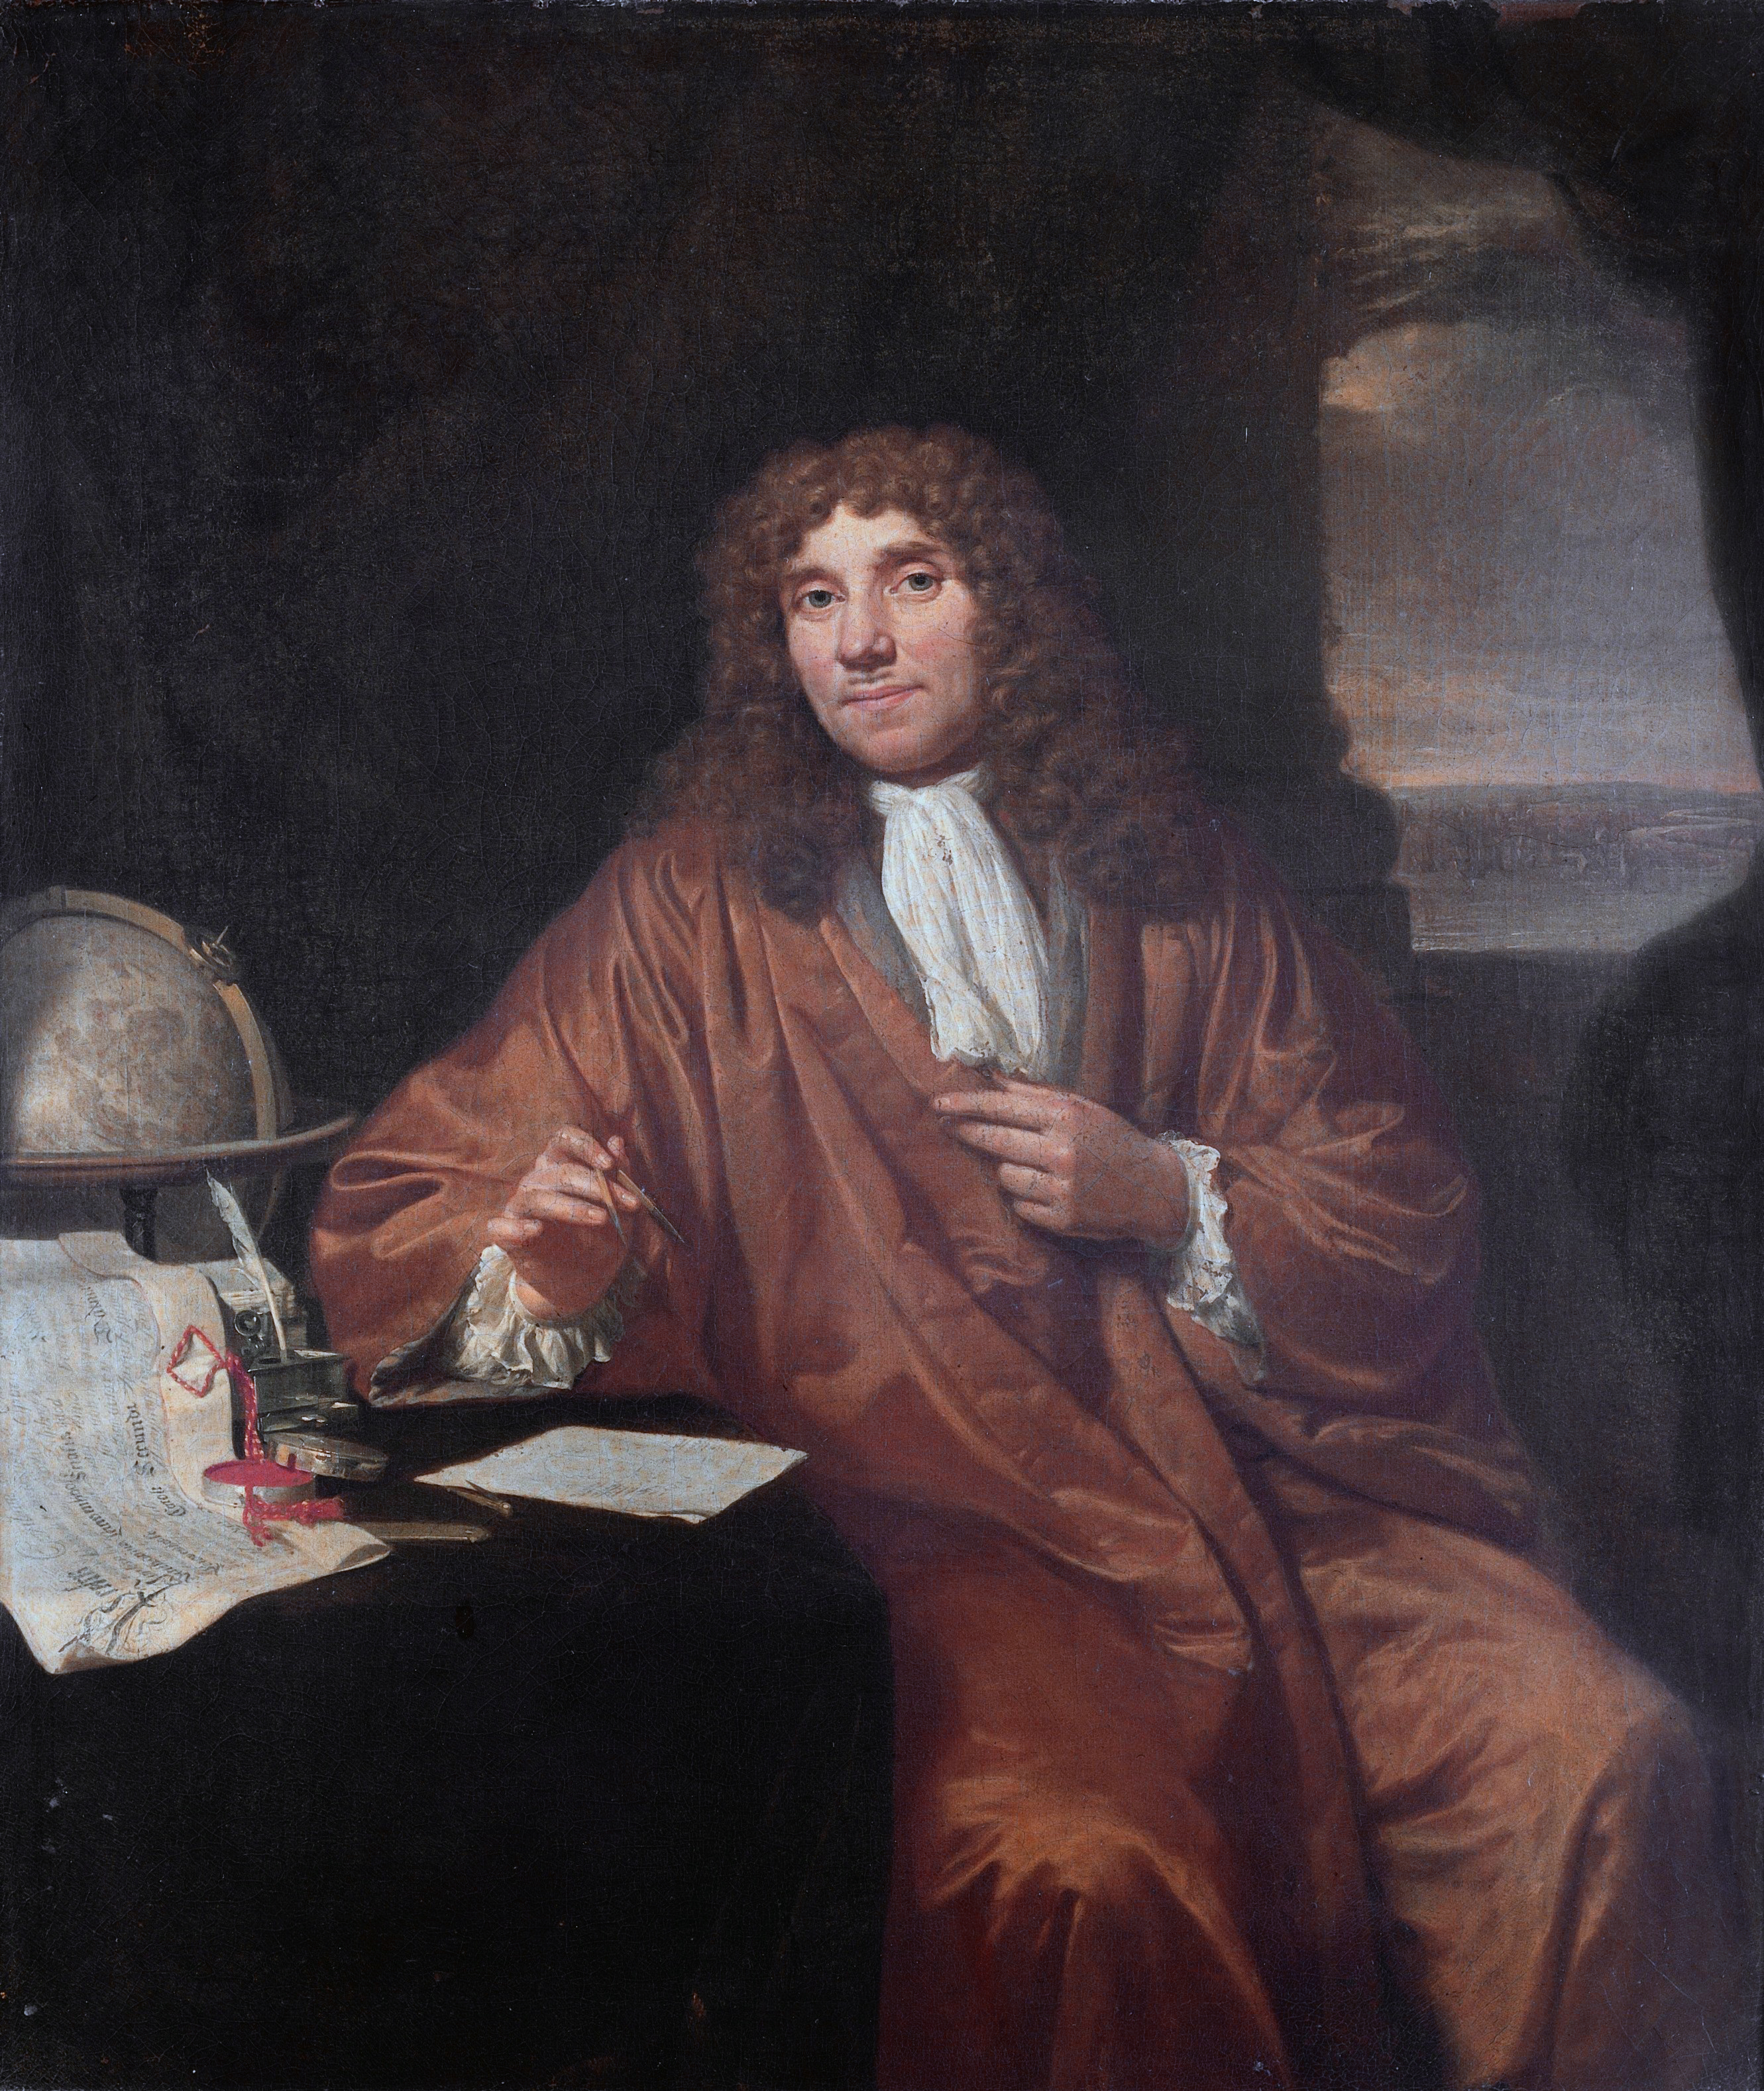 Anton van Leeuwenhoek přišel na jednoduchý způsob, jak vyrábět přesné skleněné kuličky nepatrných rozměrů a využil je jako čočky svých přístrojů. Překonal tím úroveň tehdy dostupné mikroskopické techniky. Tajemství výroby si ovšem celý život držel pr